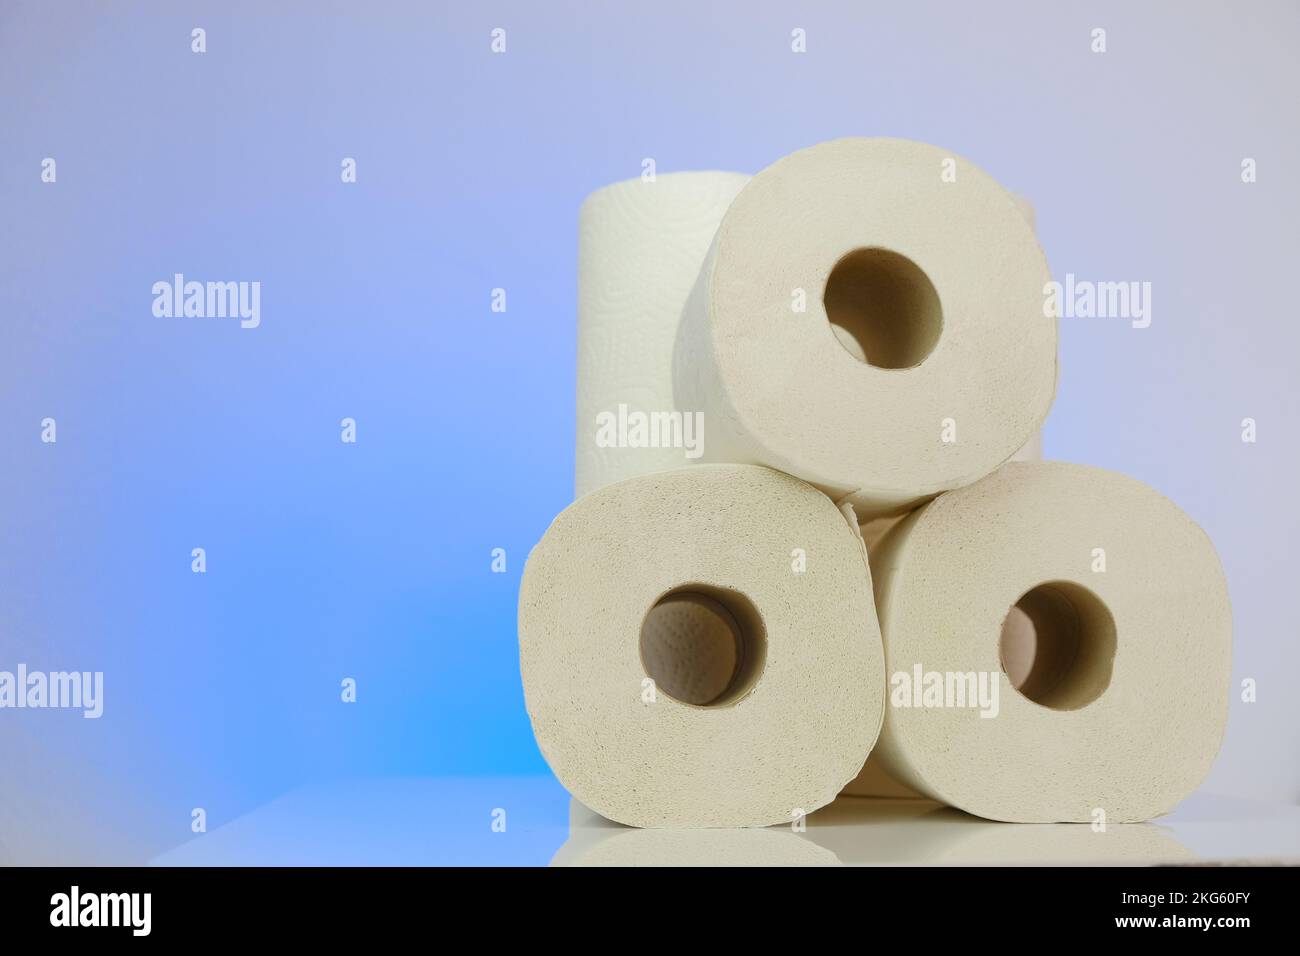 Papier toilette sur fond bleu.achat et pénurie de papier toilette.propreté et santé. Crise de l'industrie du papier en Europe. Banque D'Images